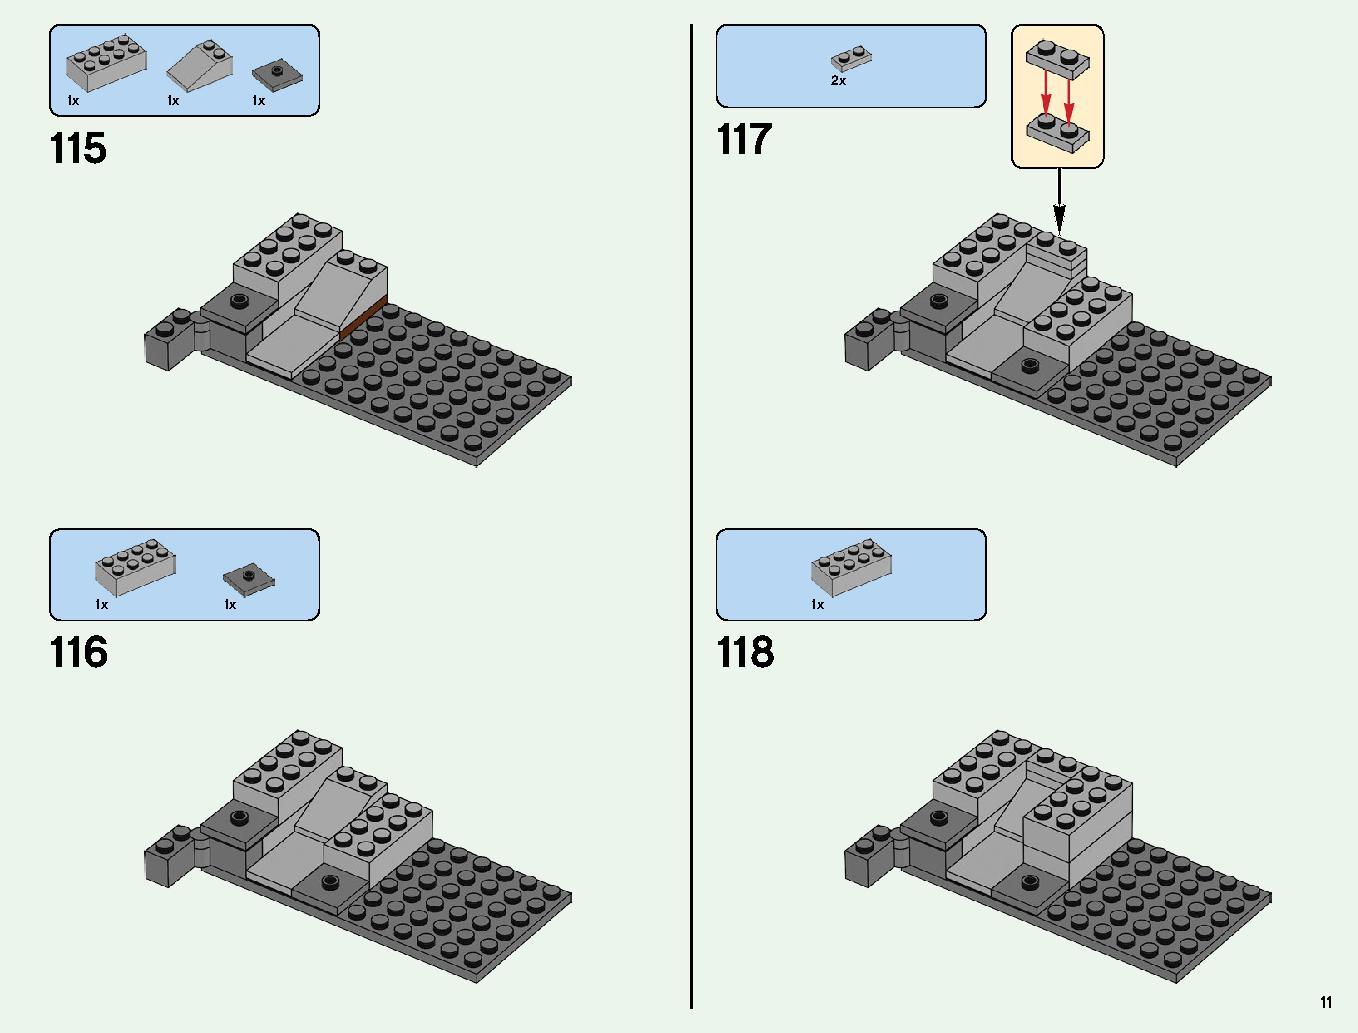 ベッドロックの冒険 21147 レゴの商品情報 レゴの説明書・組立方法 11 page